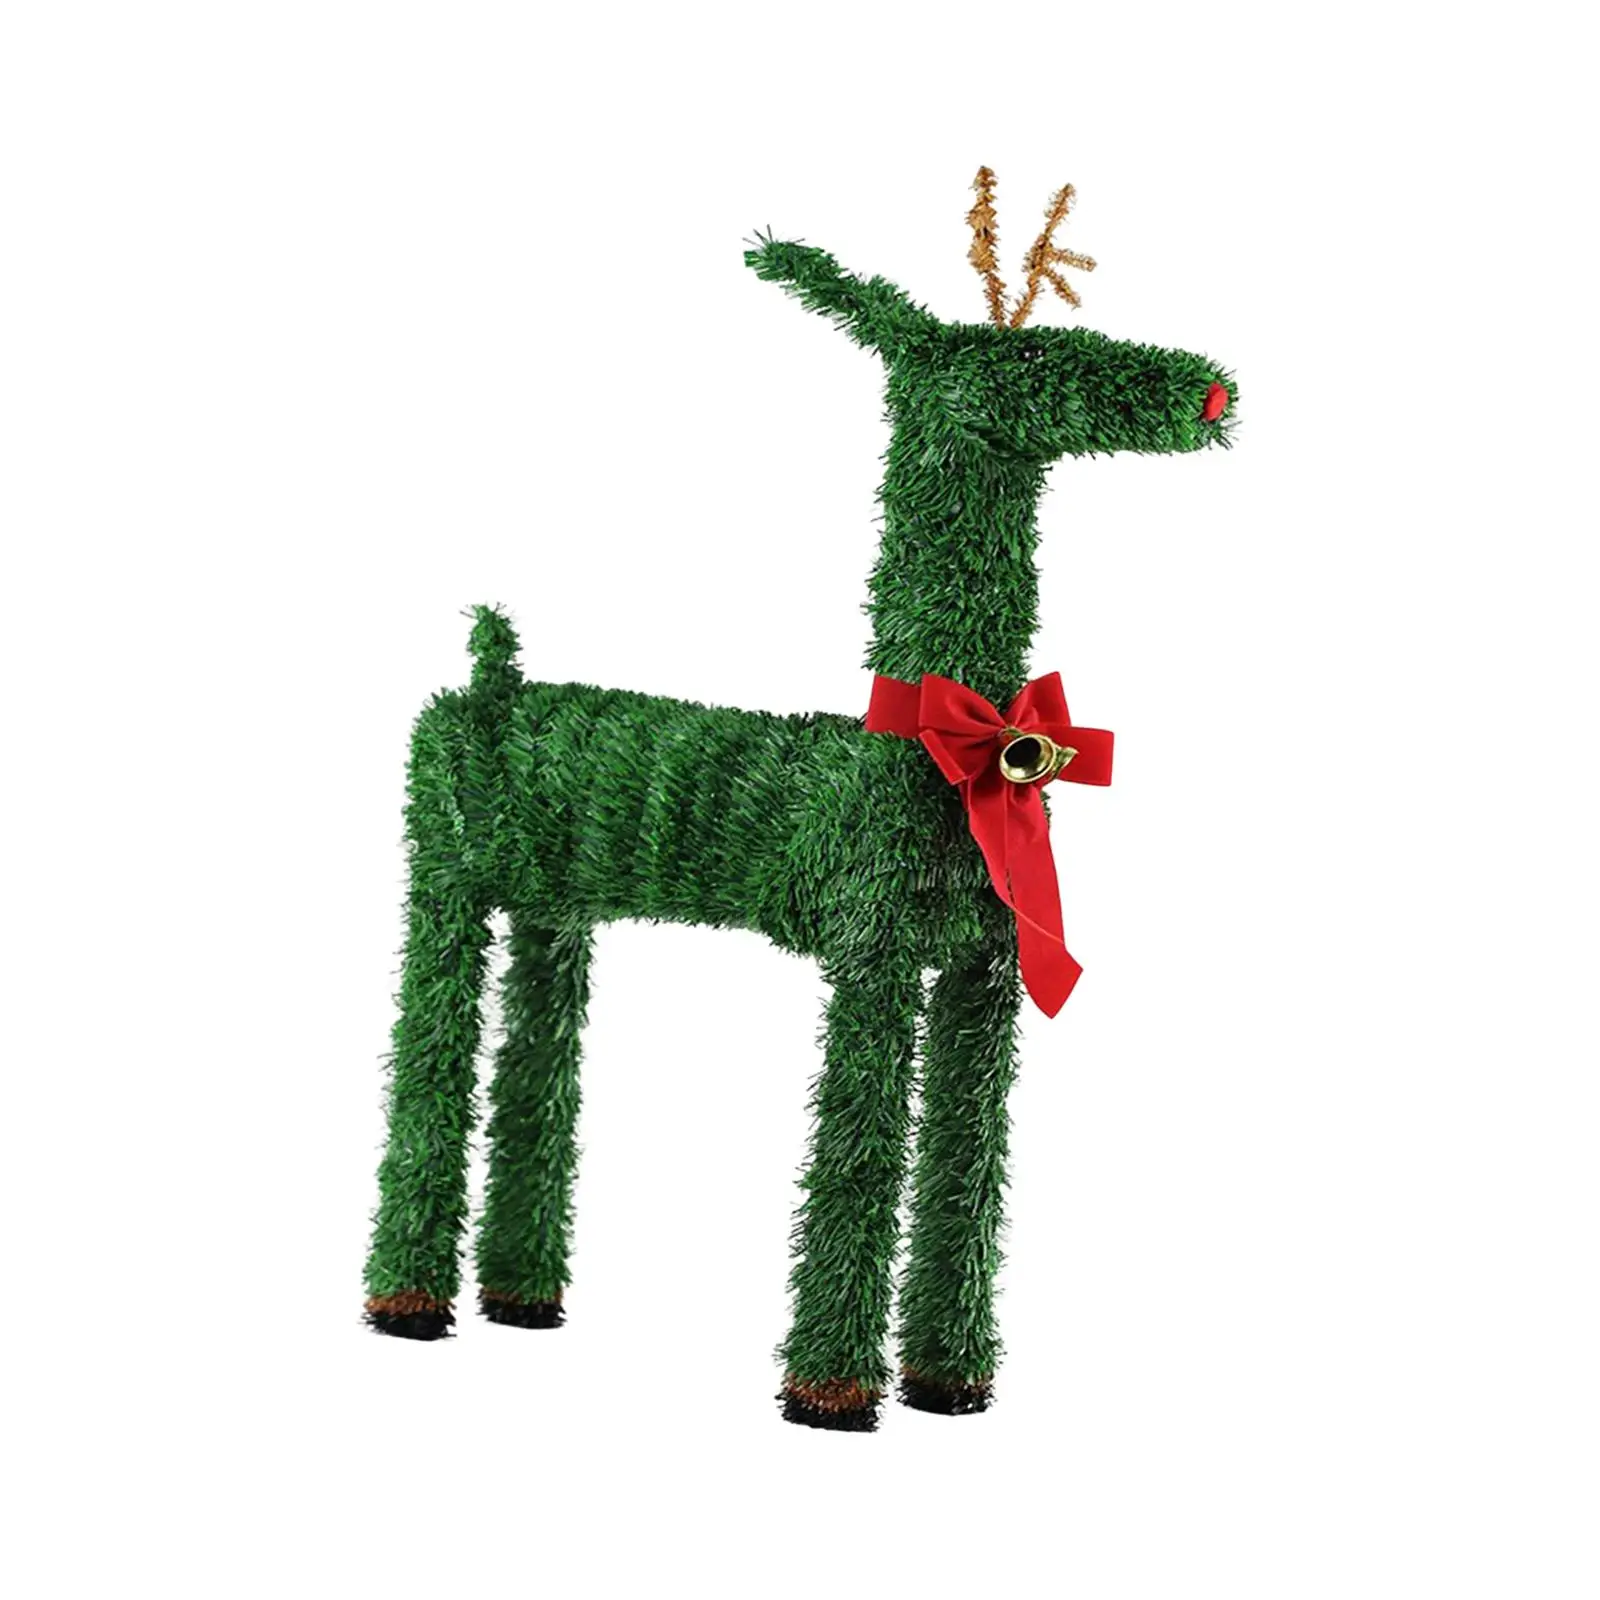 Wood Christmas Deer Ornament Crafts Reindeer Decoration for Living Room